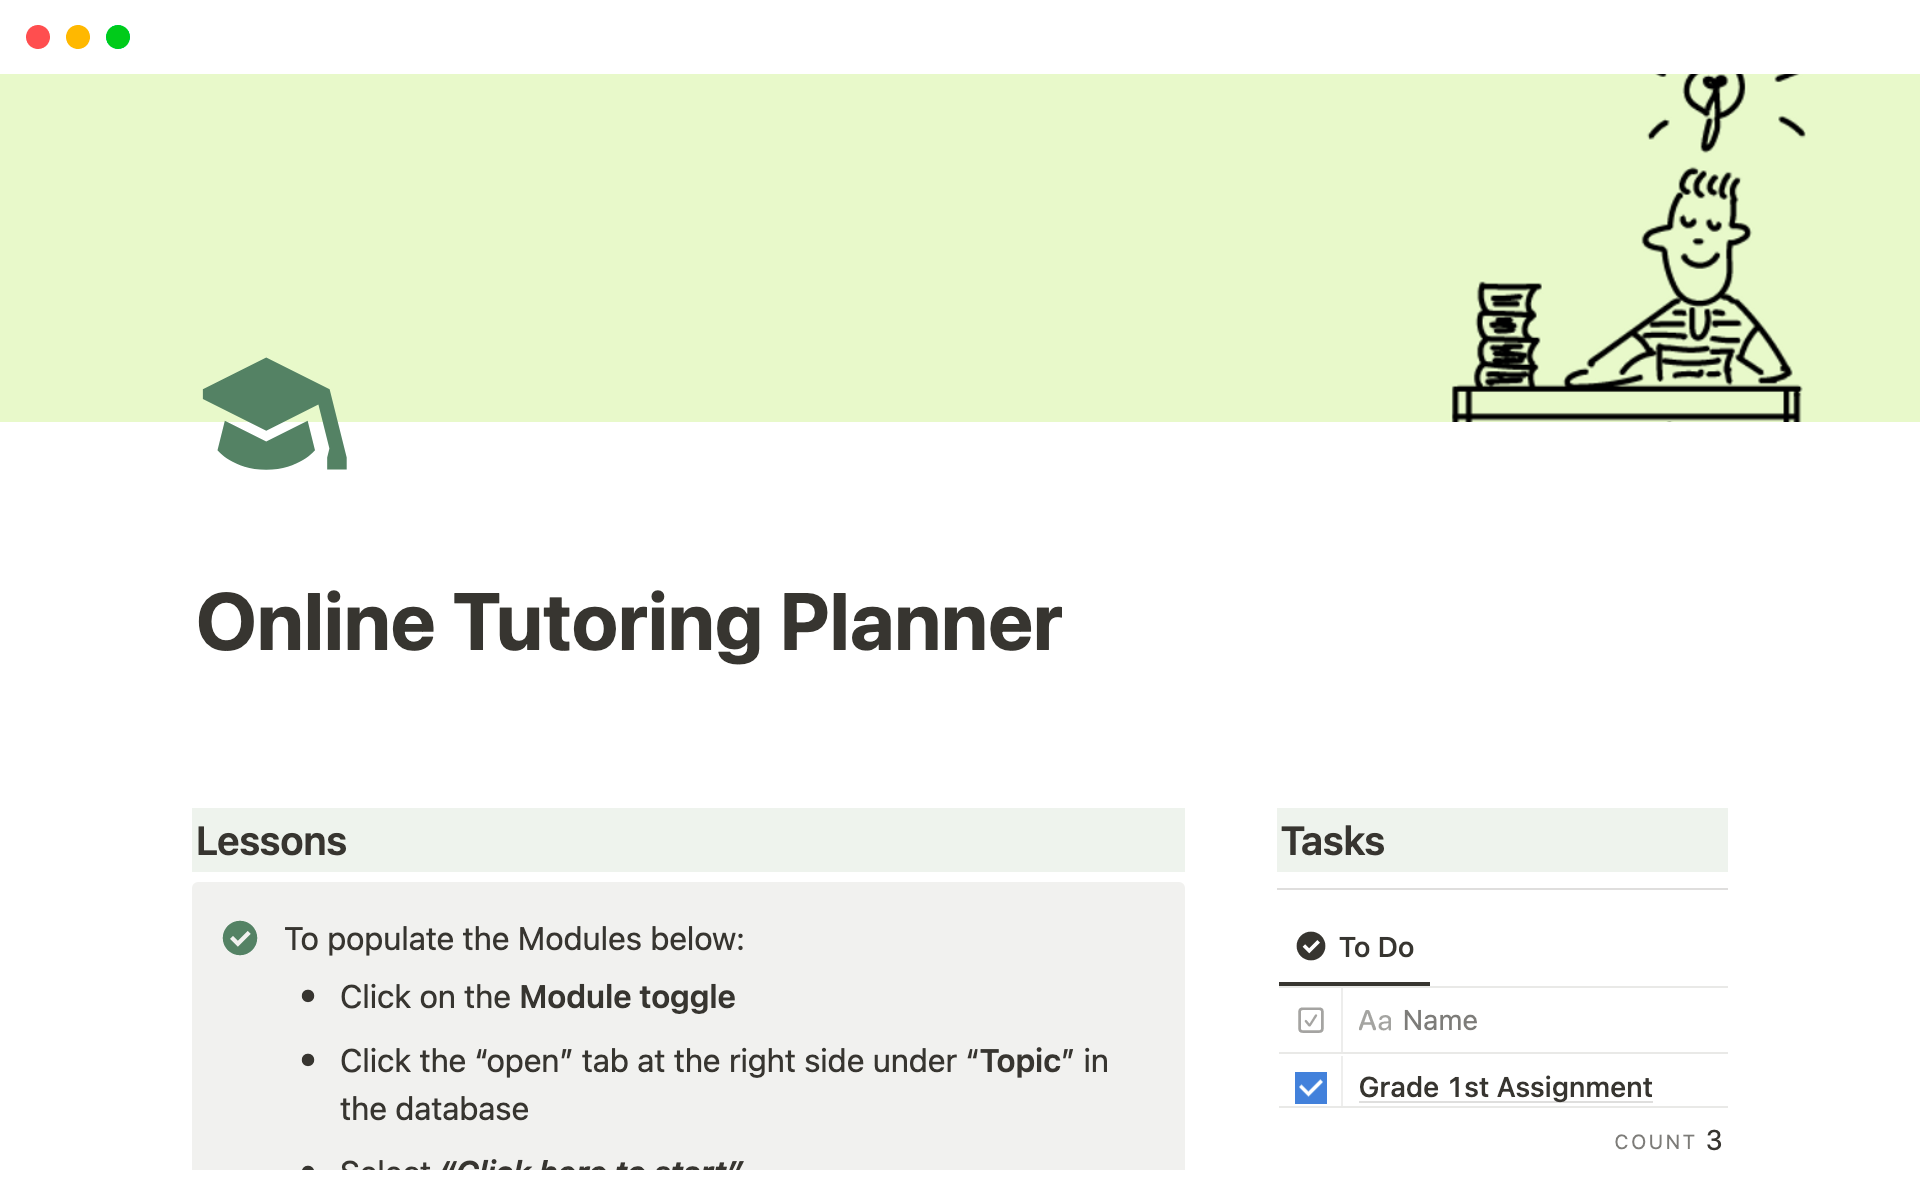 Uma prévia do modelo para Online Tutoring Planner